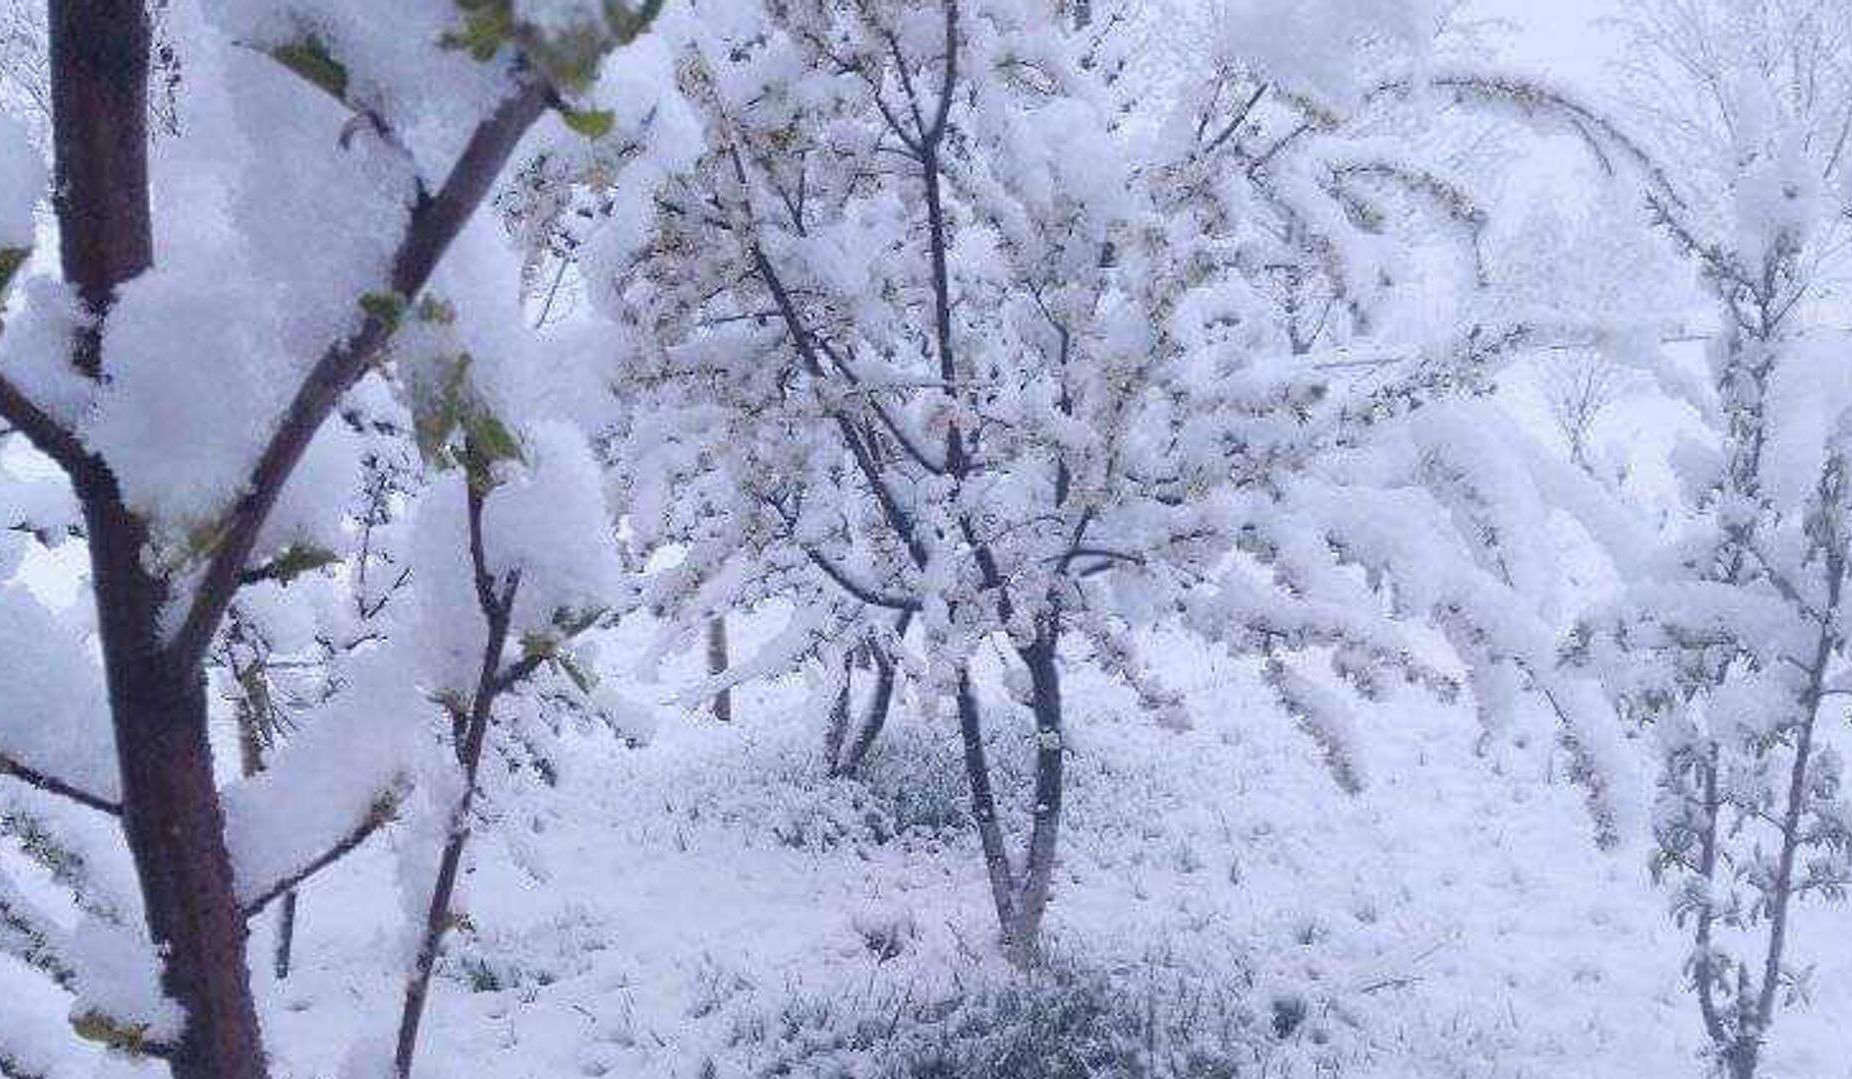 Հայաստանի մի շարք հատվածներում ձյուն է տեղում. Ճամբարակում ձյան շերտի հաստությունը 40 սմ է